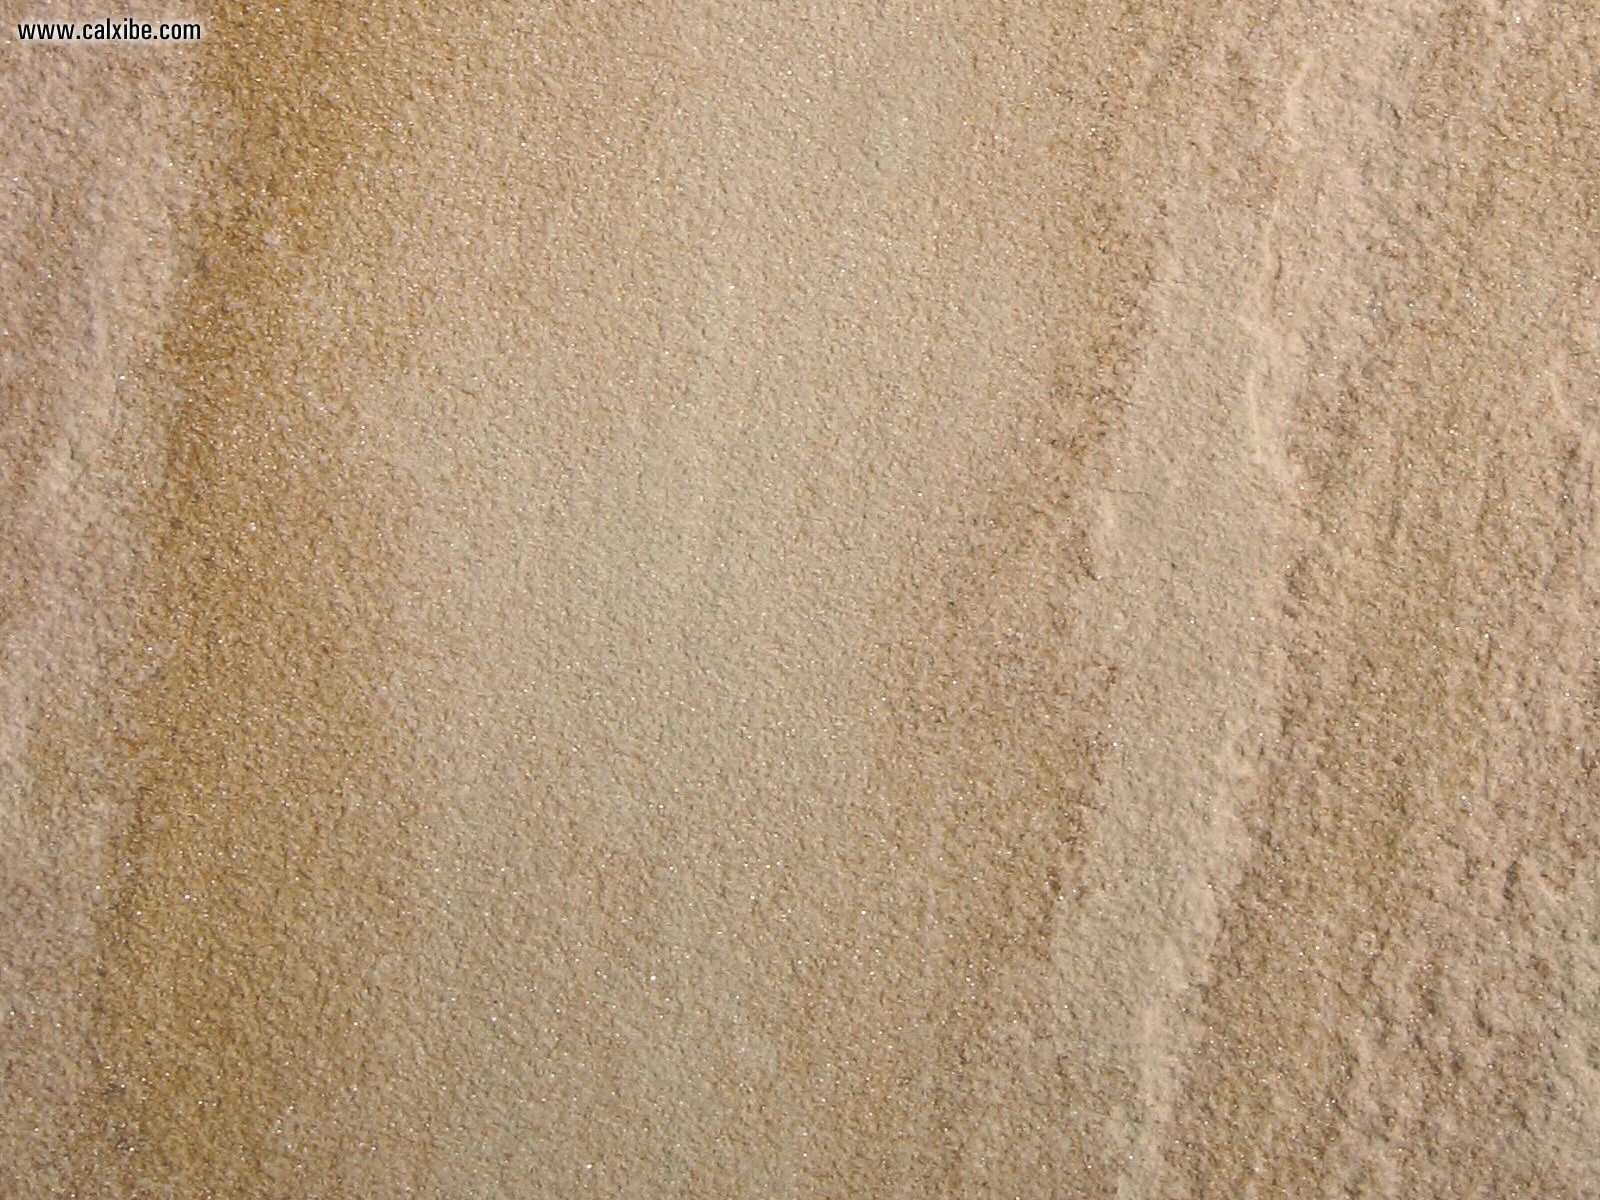 Development Sandstone picture nr 15967